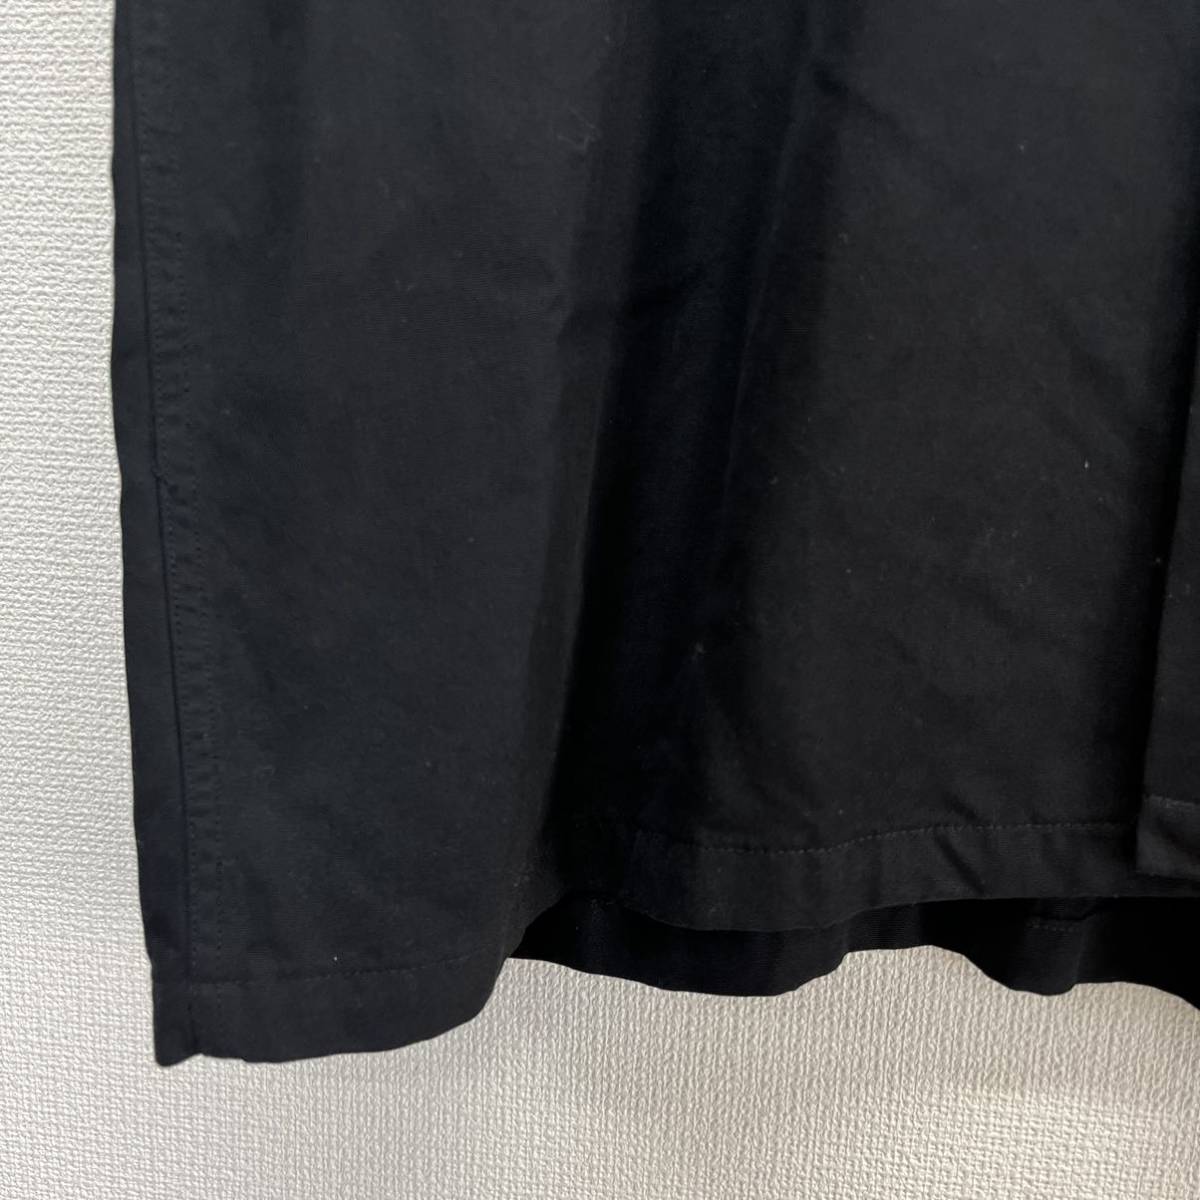 TOYO ENTERPRISE 東洋エンタープライズ TT34655 スカシャツ U.S.A.F. YOKOTA 米軍横田基地 レーヨン 刺繍 M 10112376_画像5